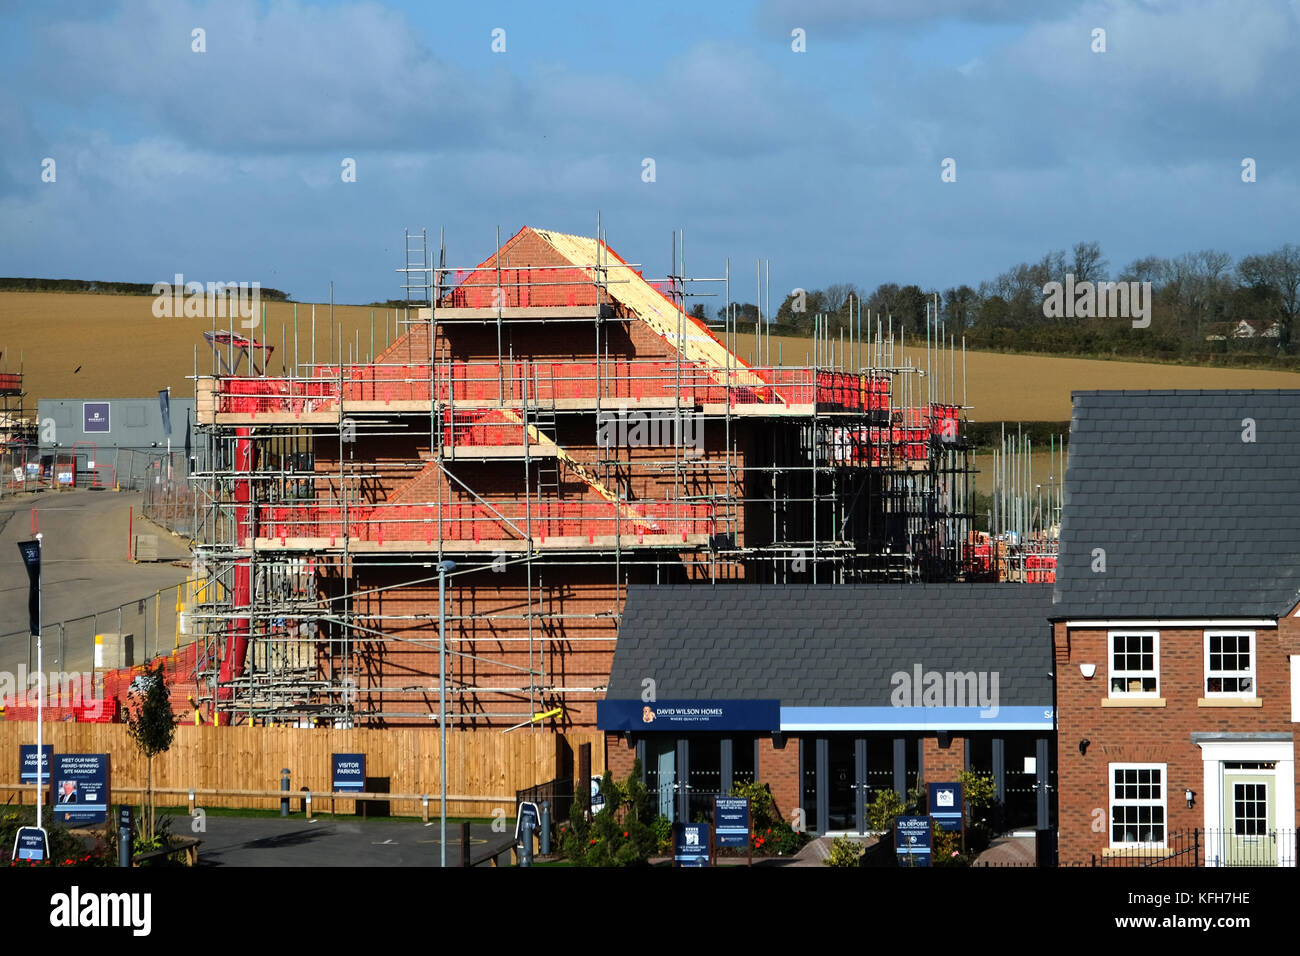 Construction d'une nouvelle maison. Grantham, Lincolnshire, Angleterre, Royaume-Uni. Banque D'Images